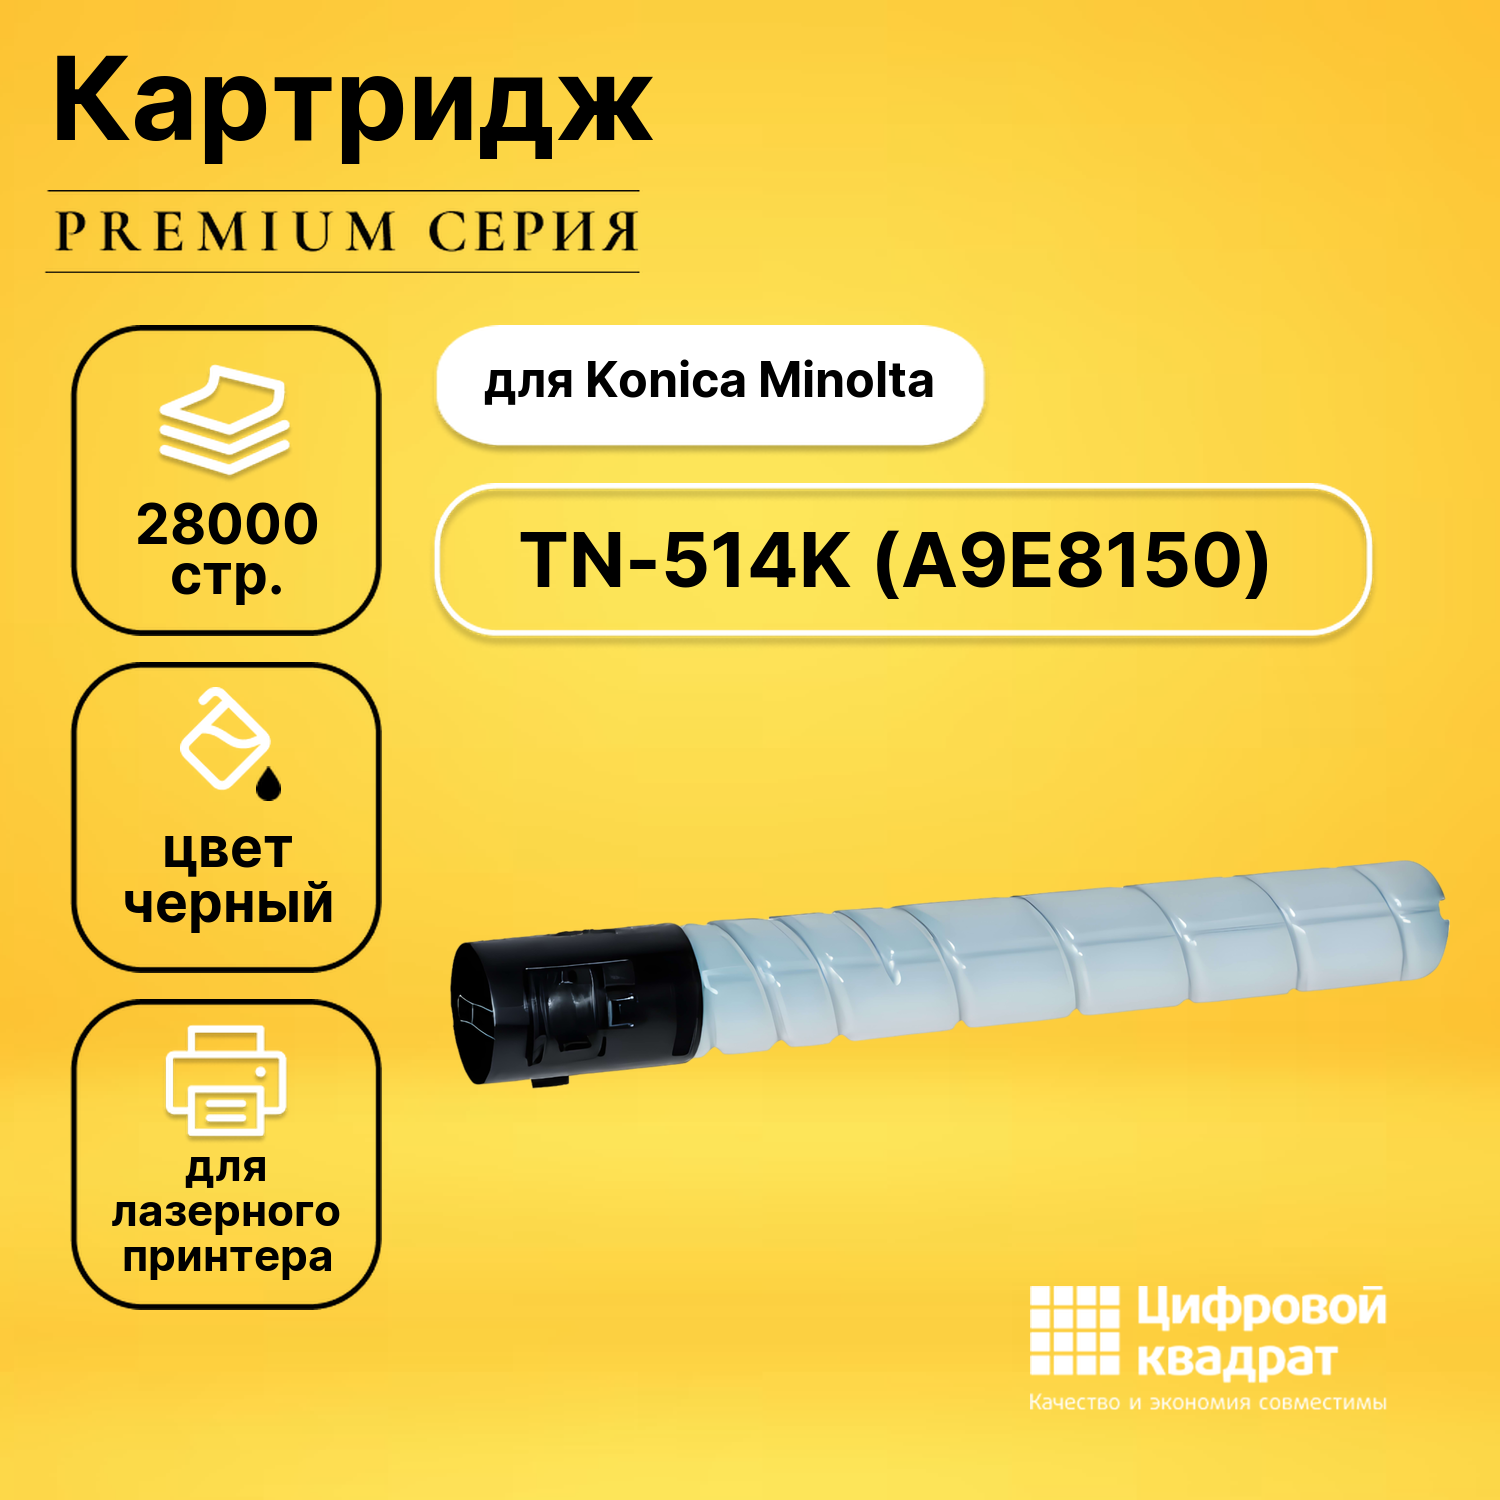 Картридж DS TN-514K Konica A9E8150 черный совместимый